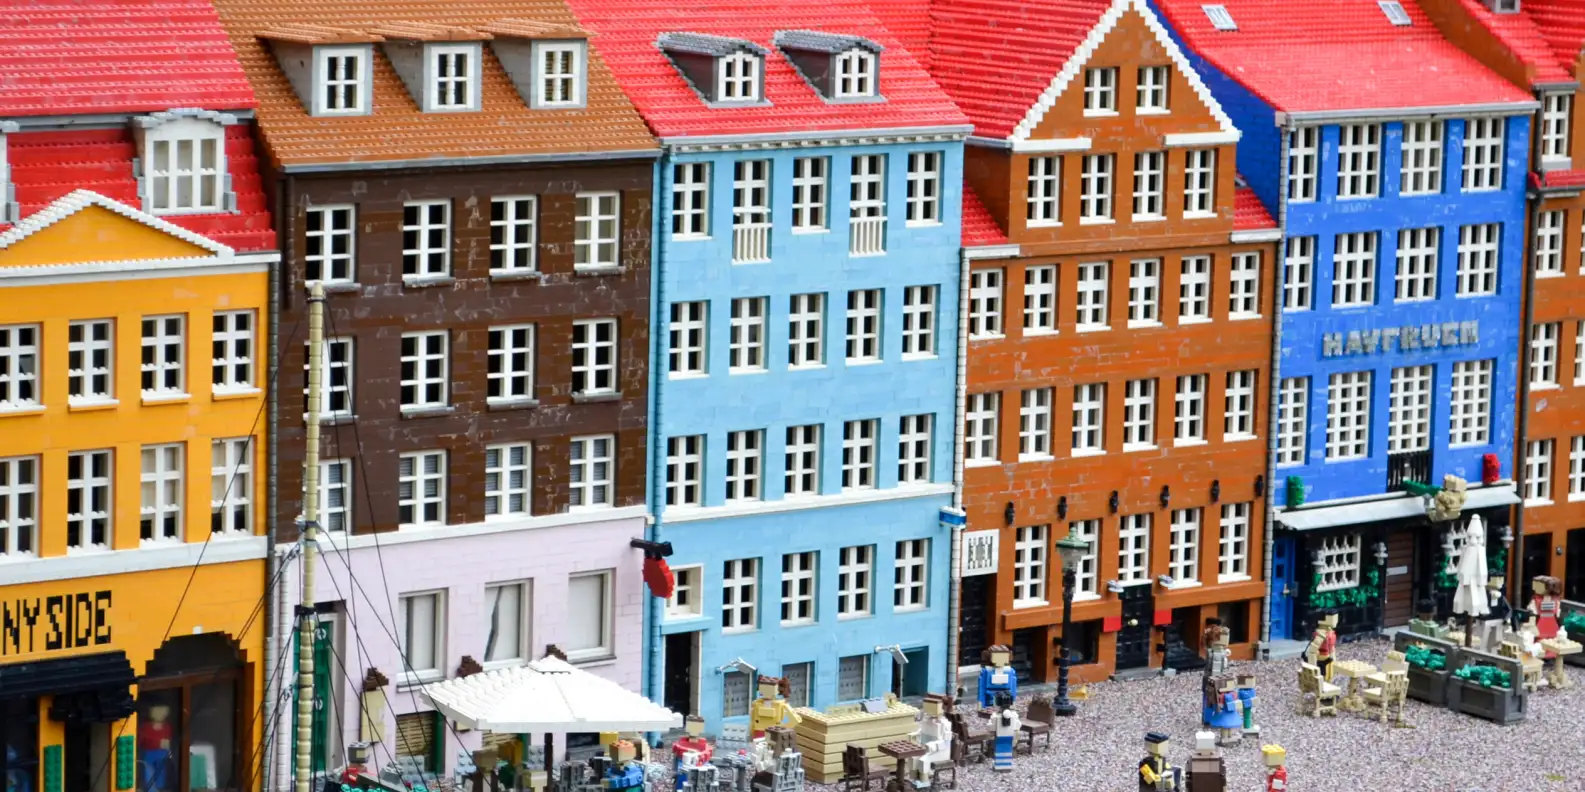 Cómo es la visita al Legoland Discovery Center de Berlín - Berlin con niños - Foro Viajar con Niños